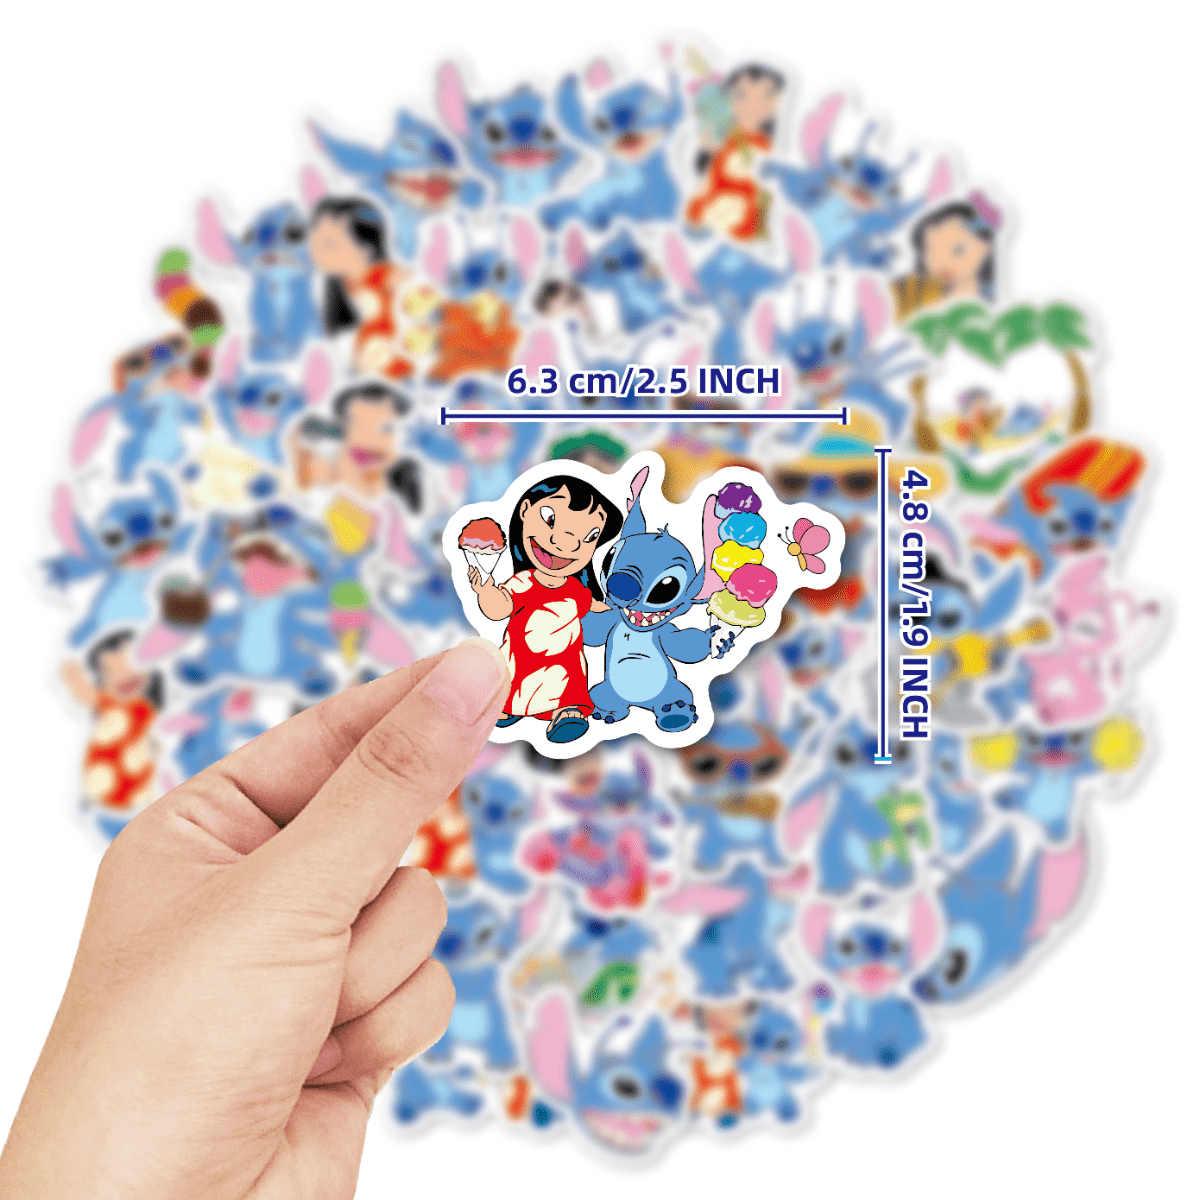 Pegatinas de Stitch de Disney para niños, pegatinas impermeables